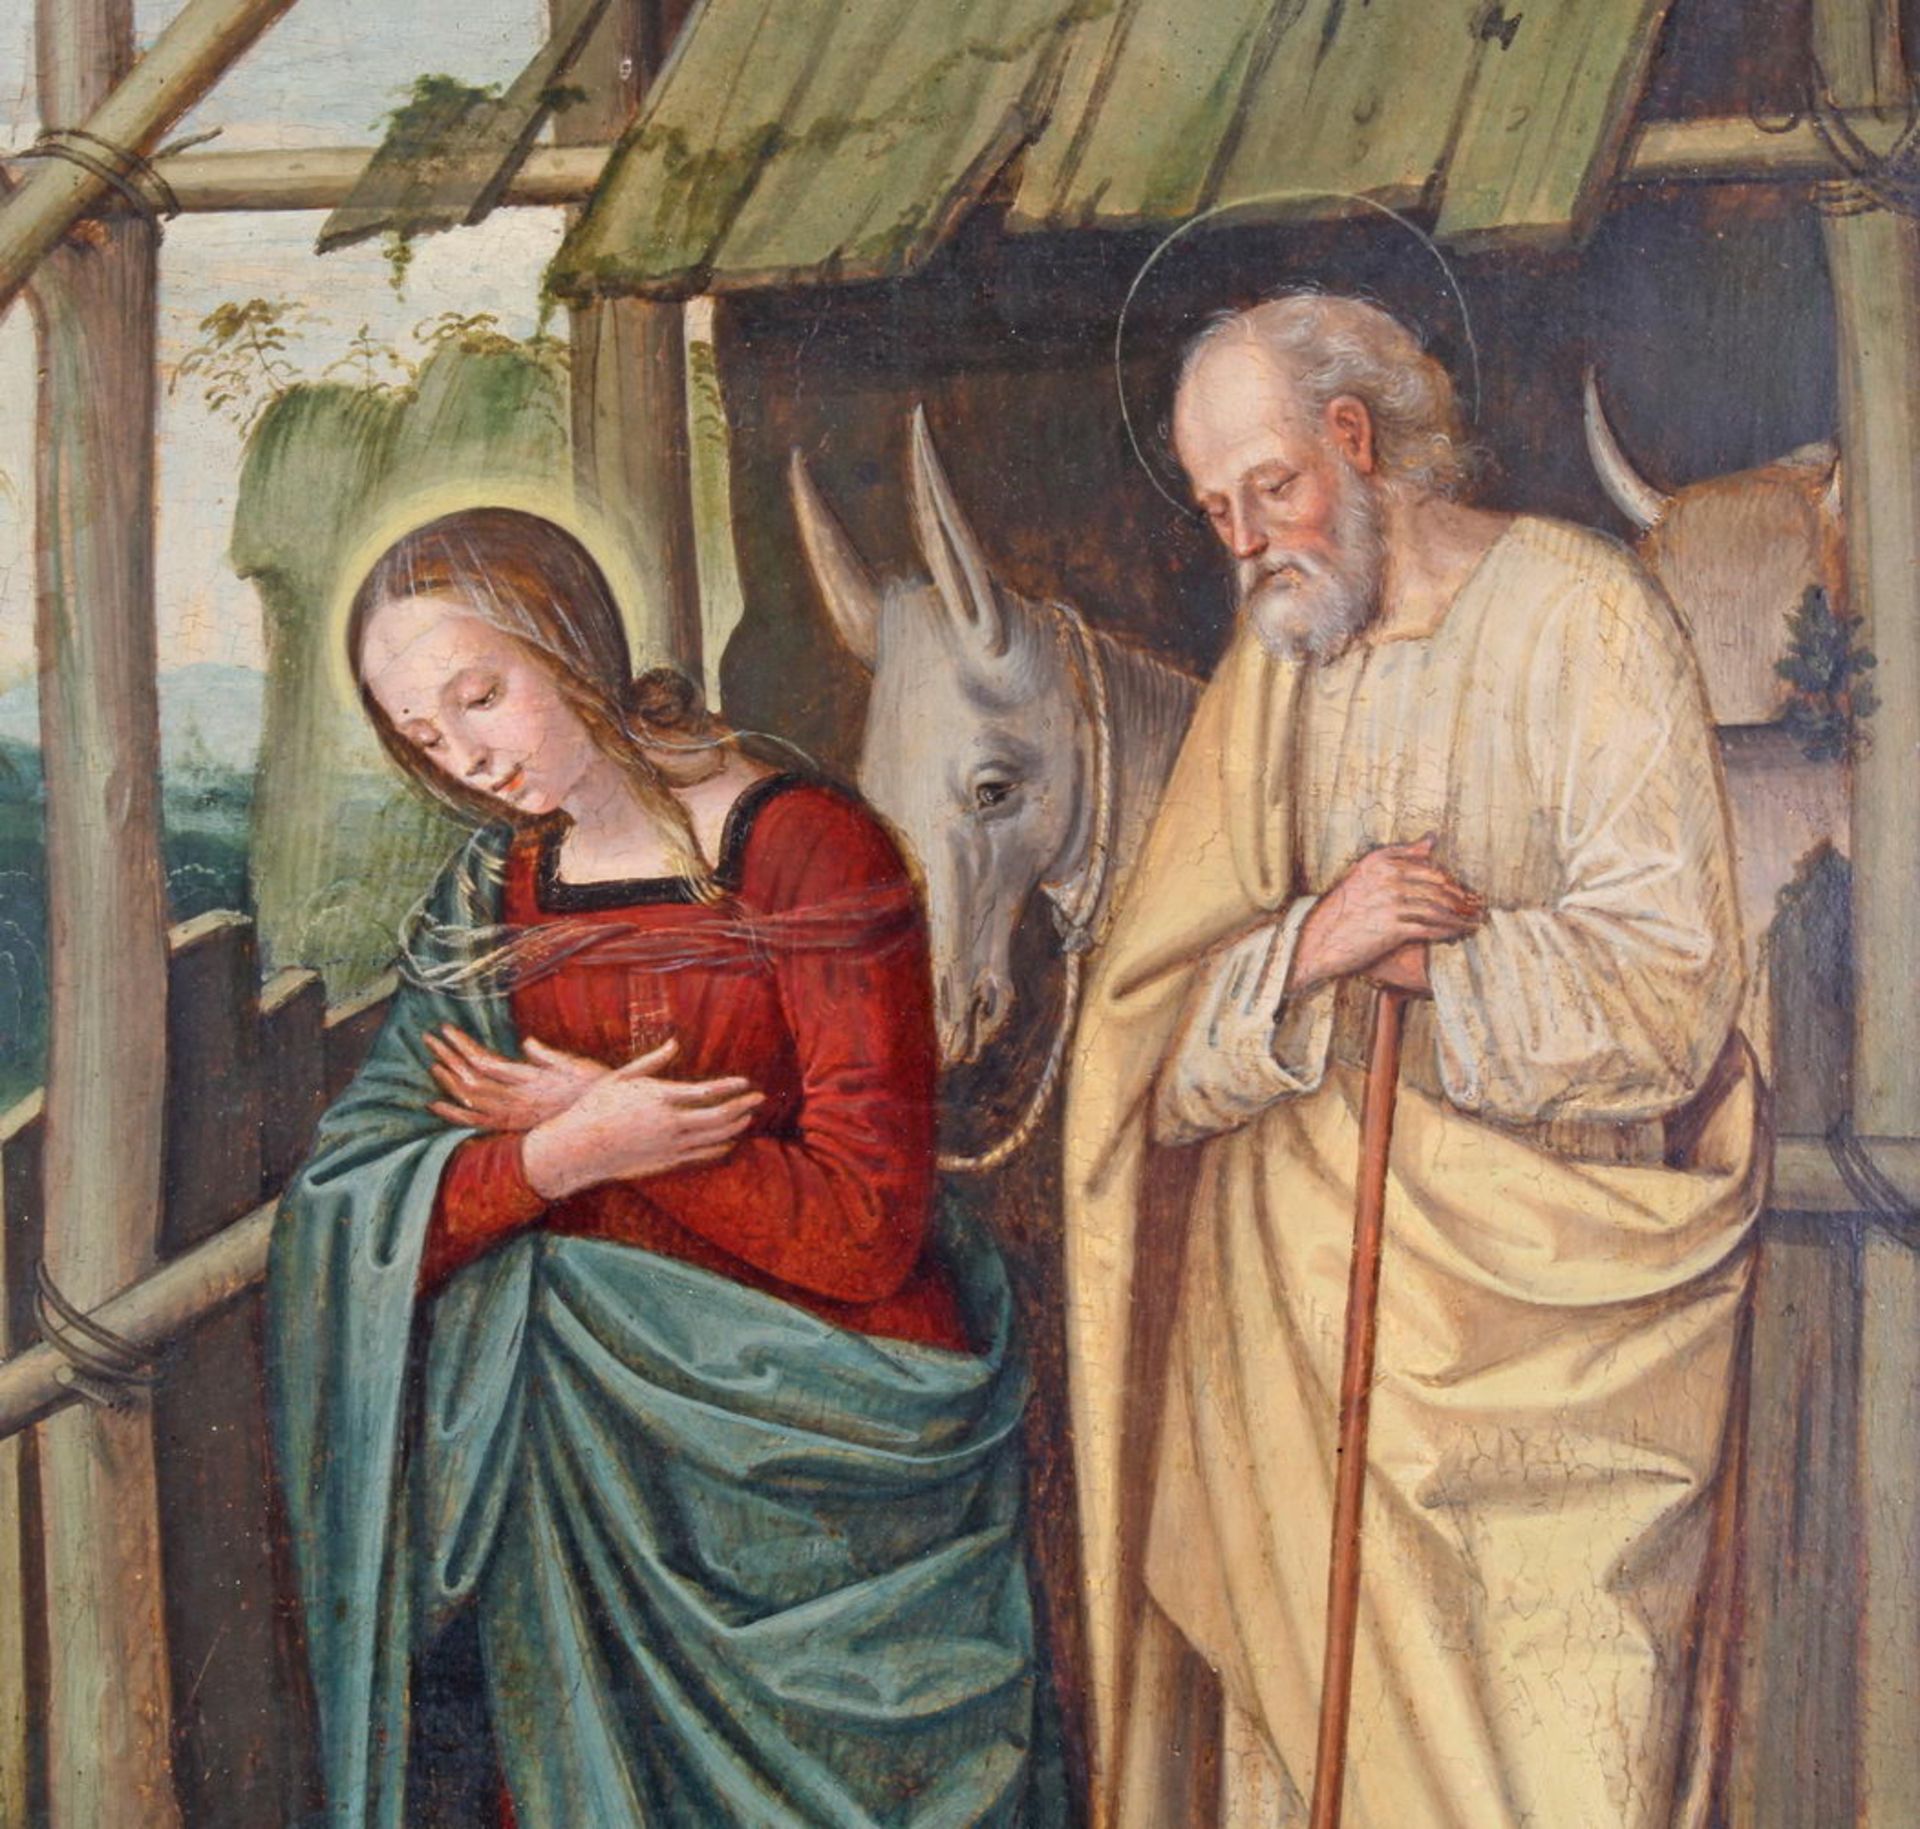 Norditalienischer Meister (wohl um 1500), "Die Anbetung des Kindes", Tempera auf Holz, 50 x 41.5 cm - Image 3 of 6